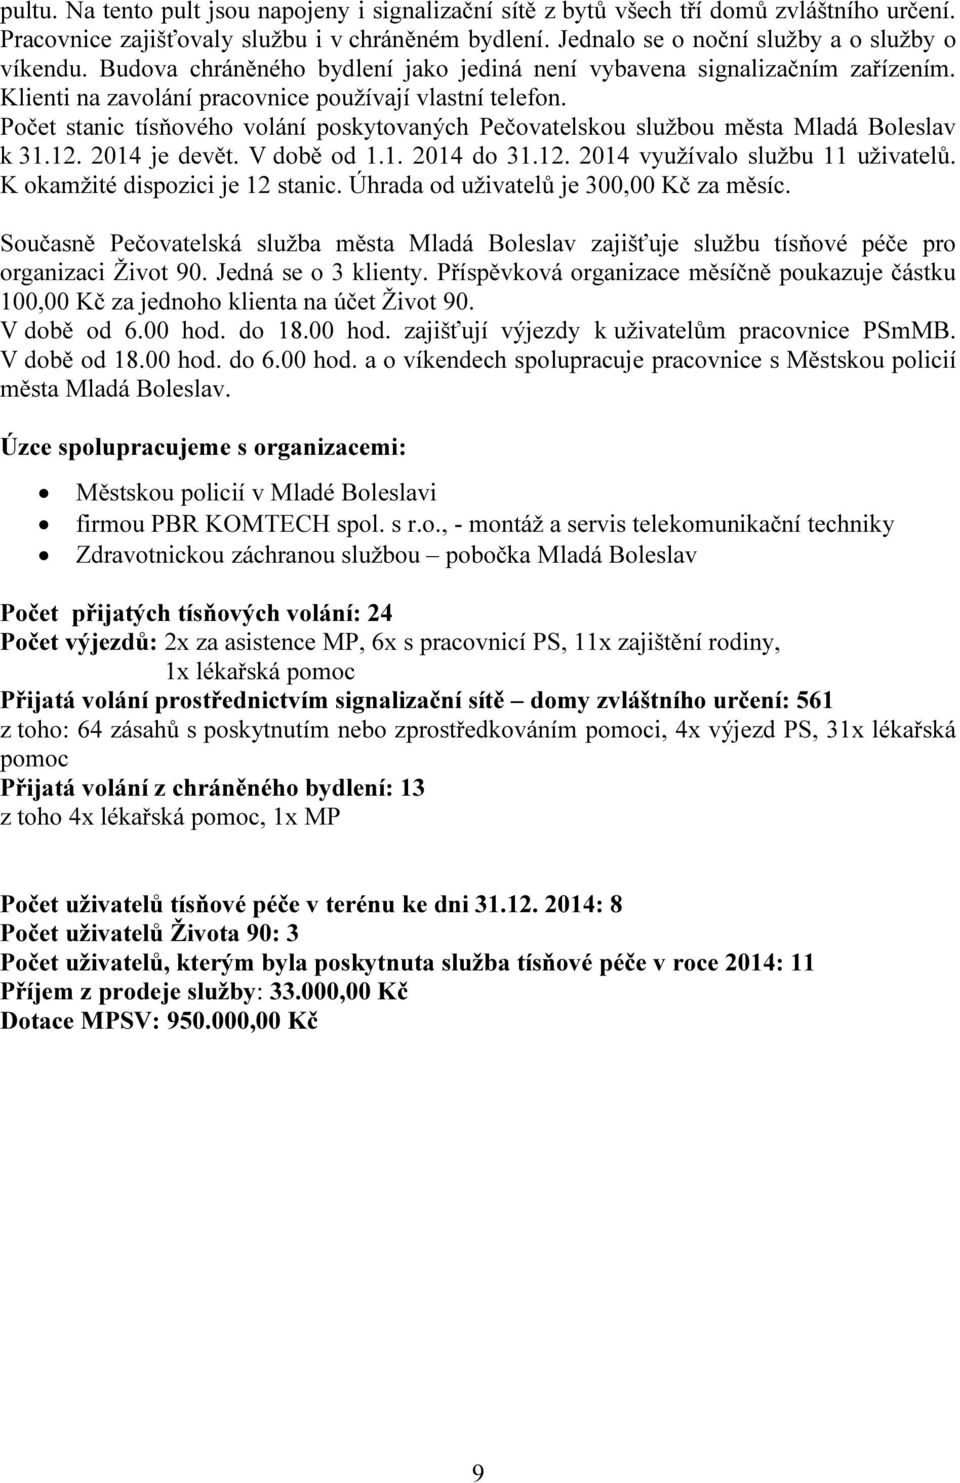 Počet stanic tísňového volání poskytovaných Pečovatelskou službou města Mladá Boleslav k 31.12. 2014 je devět. V době od 1.1. 2014 do 31.12. 2014 využívalo službu 11 uživatelů.